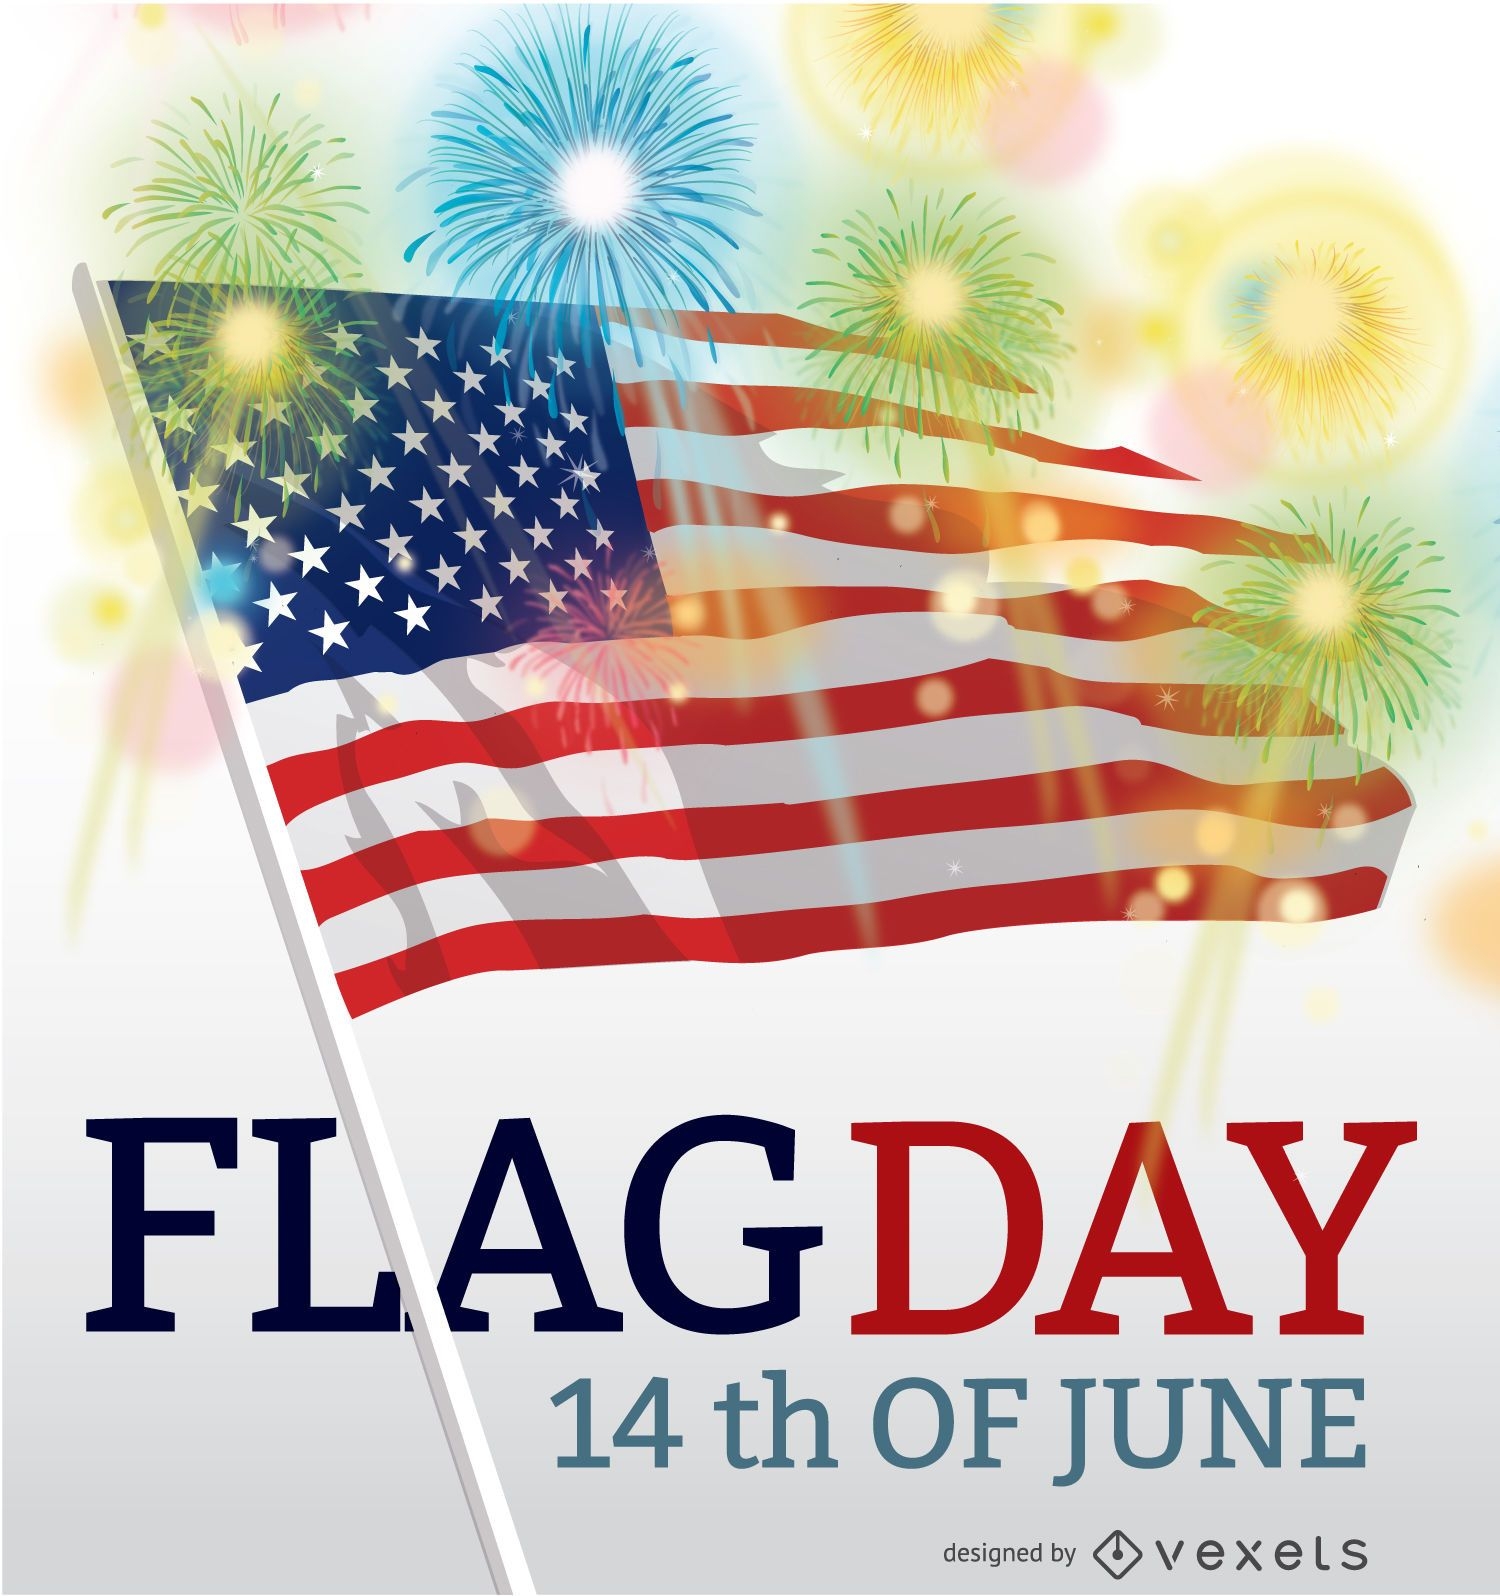 D?a de la bandera EE.UU. 14 de junio